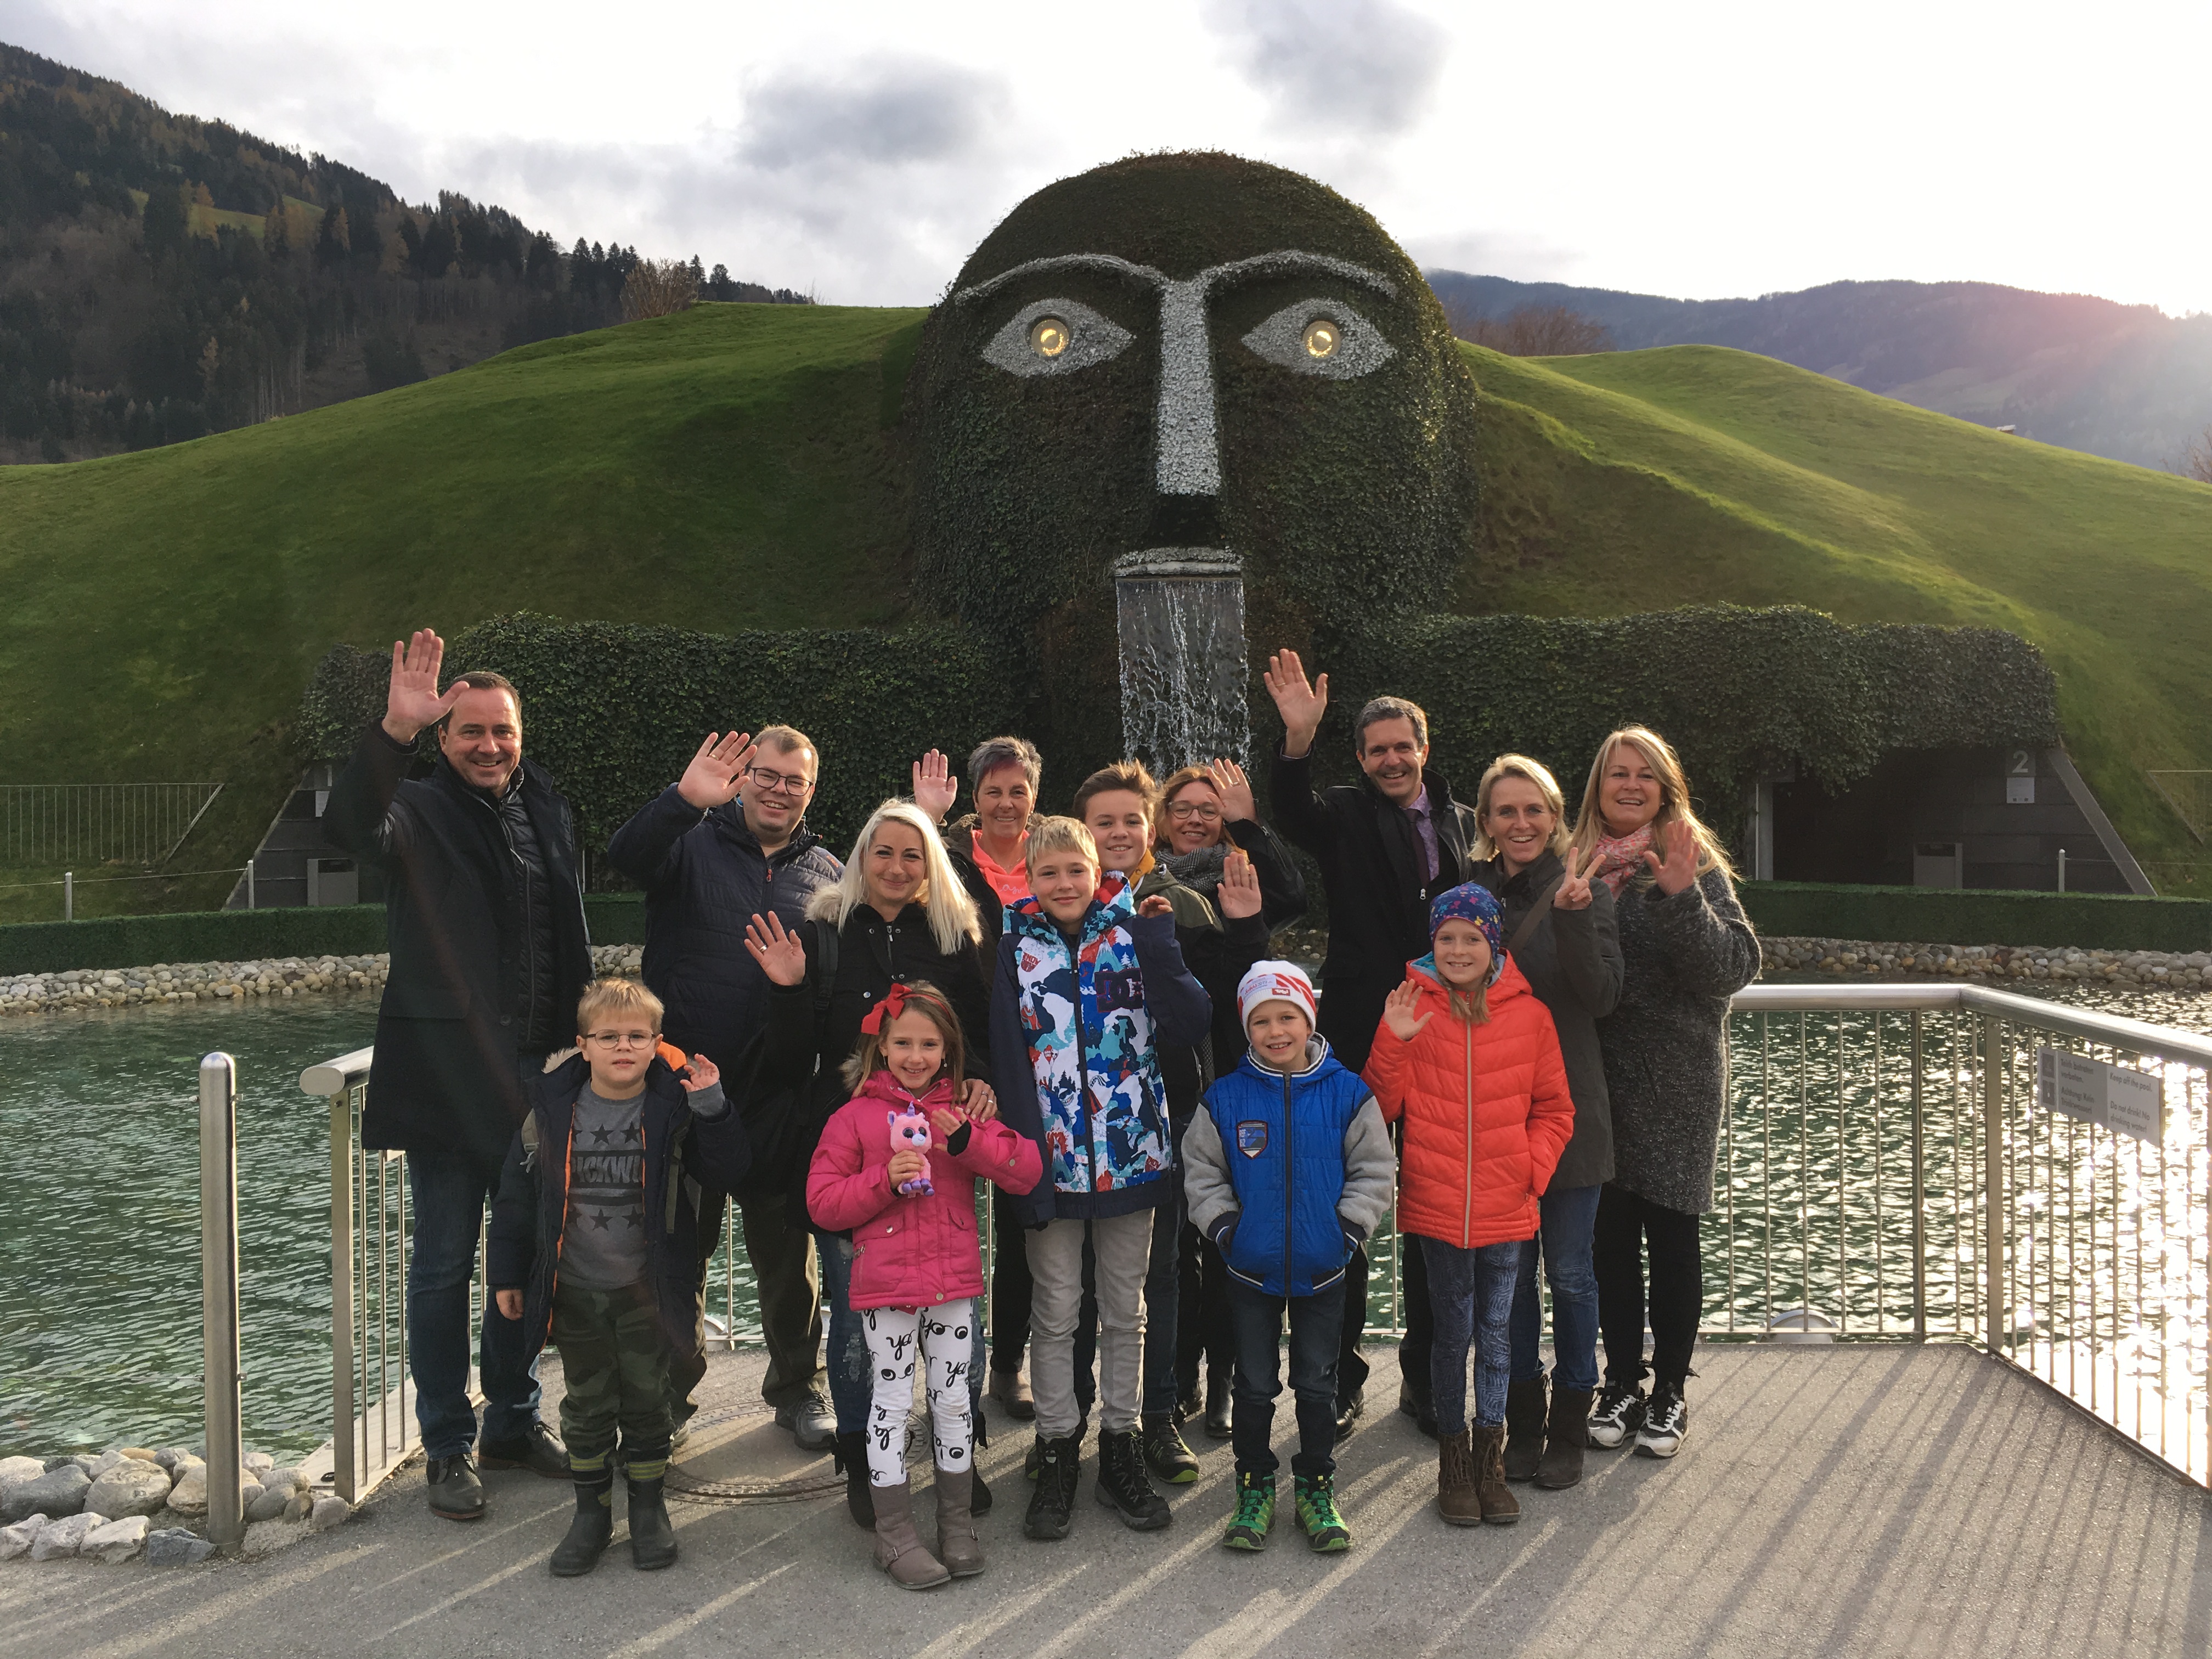 Vor den FIS Nordischen Ski Weltmeisterschaften 2019 in Seefeld besuchten die Nachwuchslangläufer mit ihren Familien die Swarovski Kristallwelten.